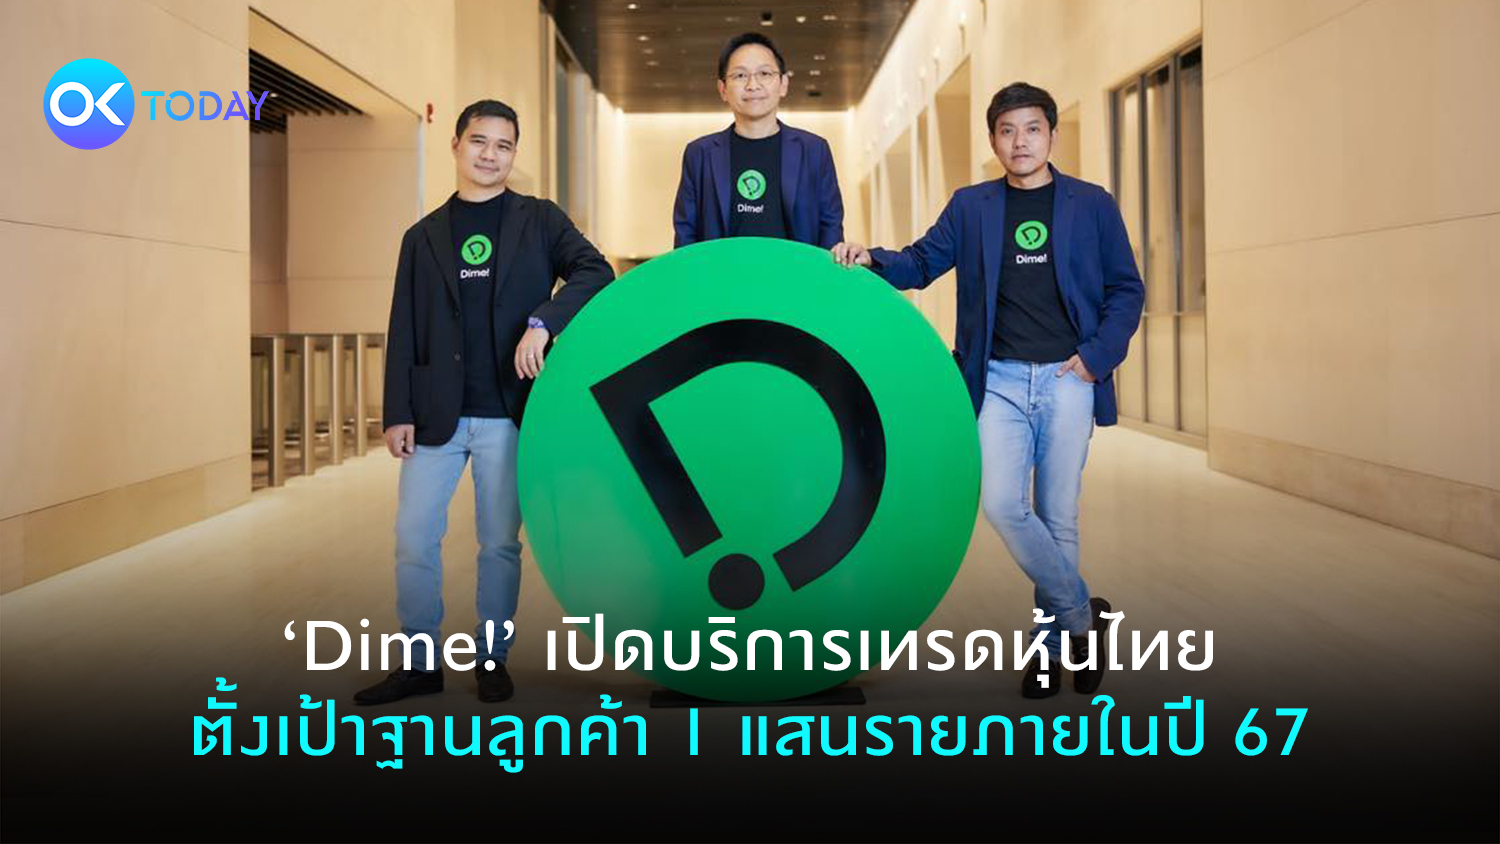 ‘Dime!’ เปิดบริการเทรดหุ้นไทย ตั้งเป้าฐานลูกค้า 1 แสนรายภายในปี 67